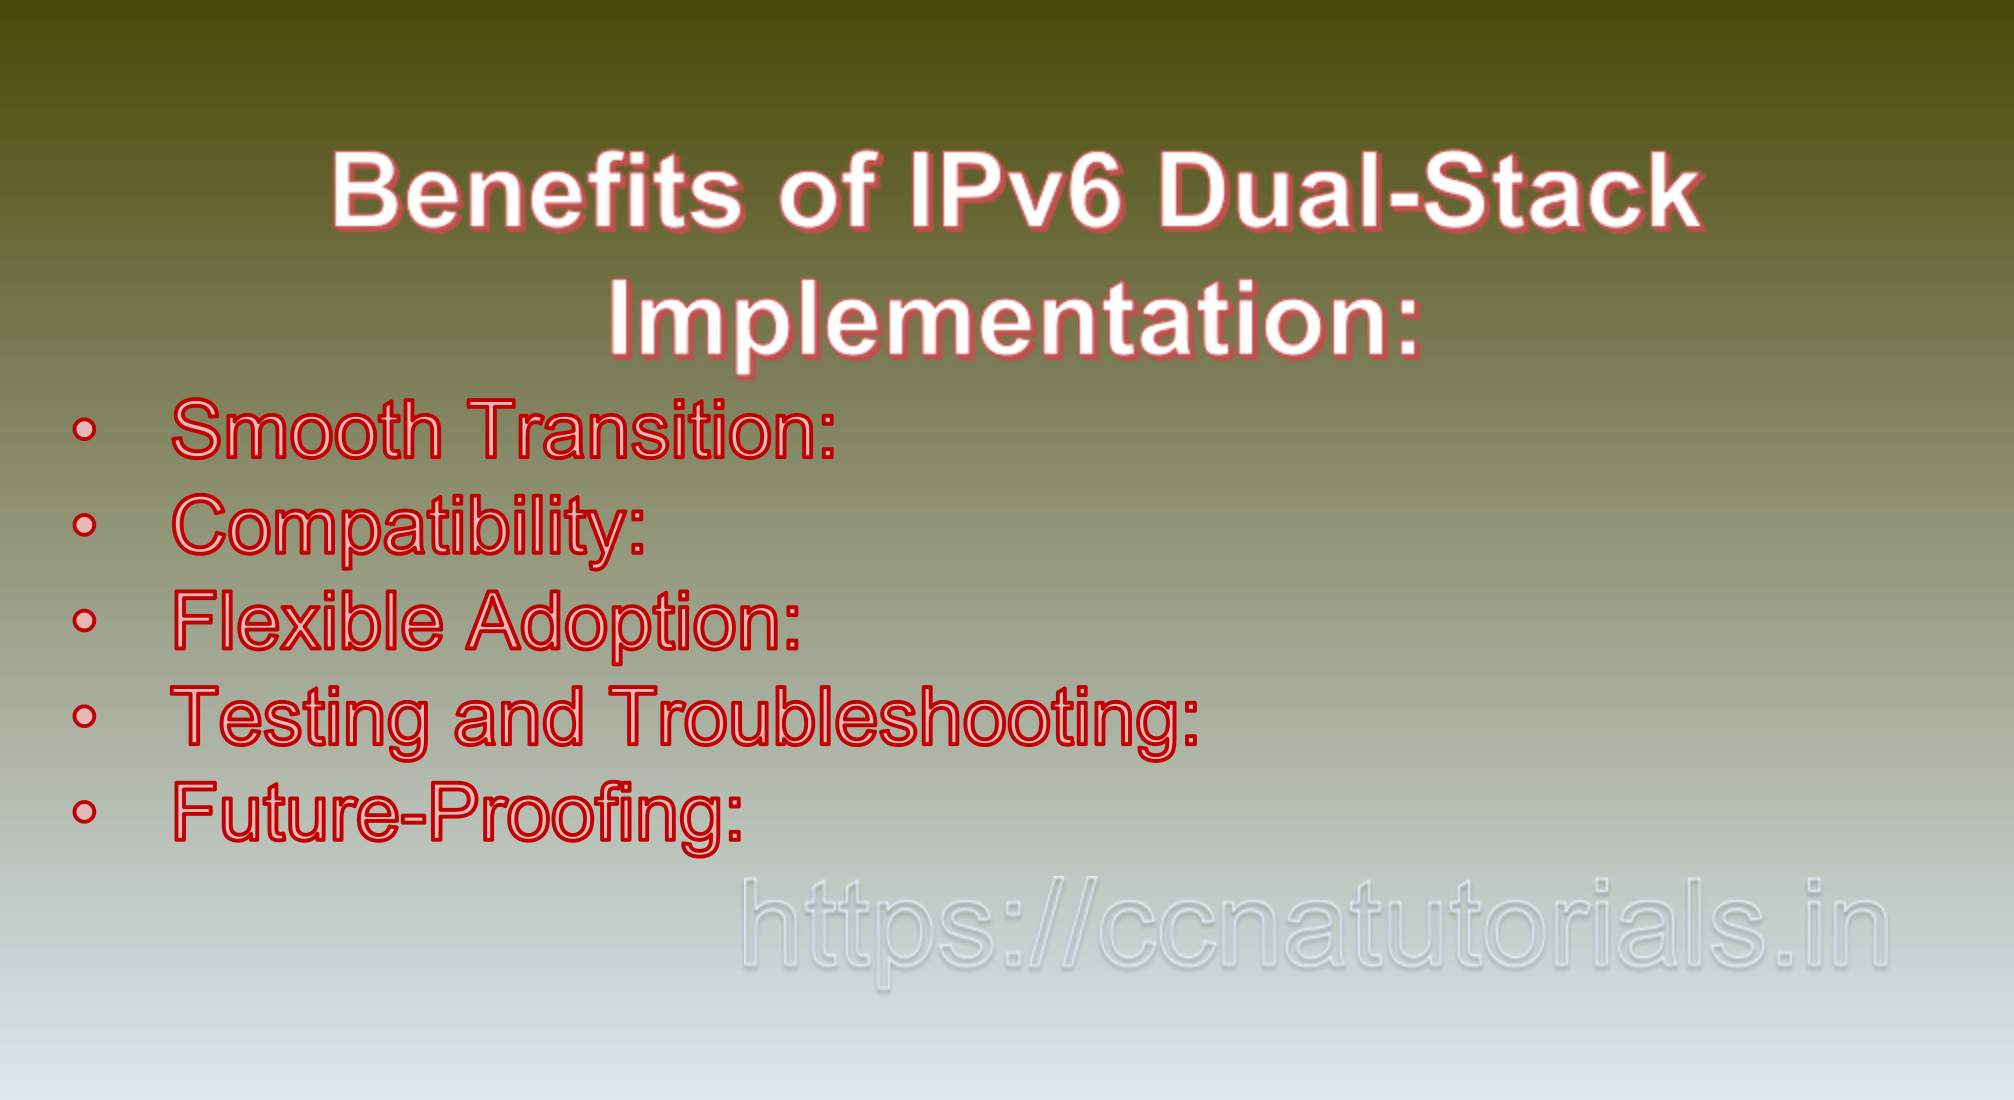 IPv6 Dual-Stack Implementation, ccna, ccna tutorials